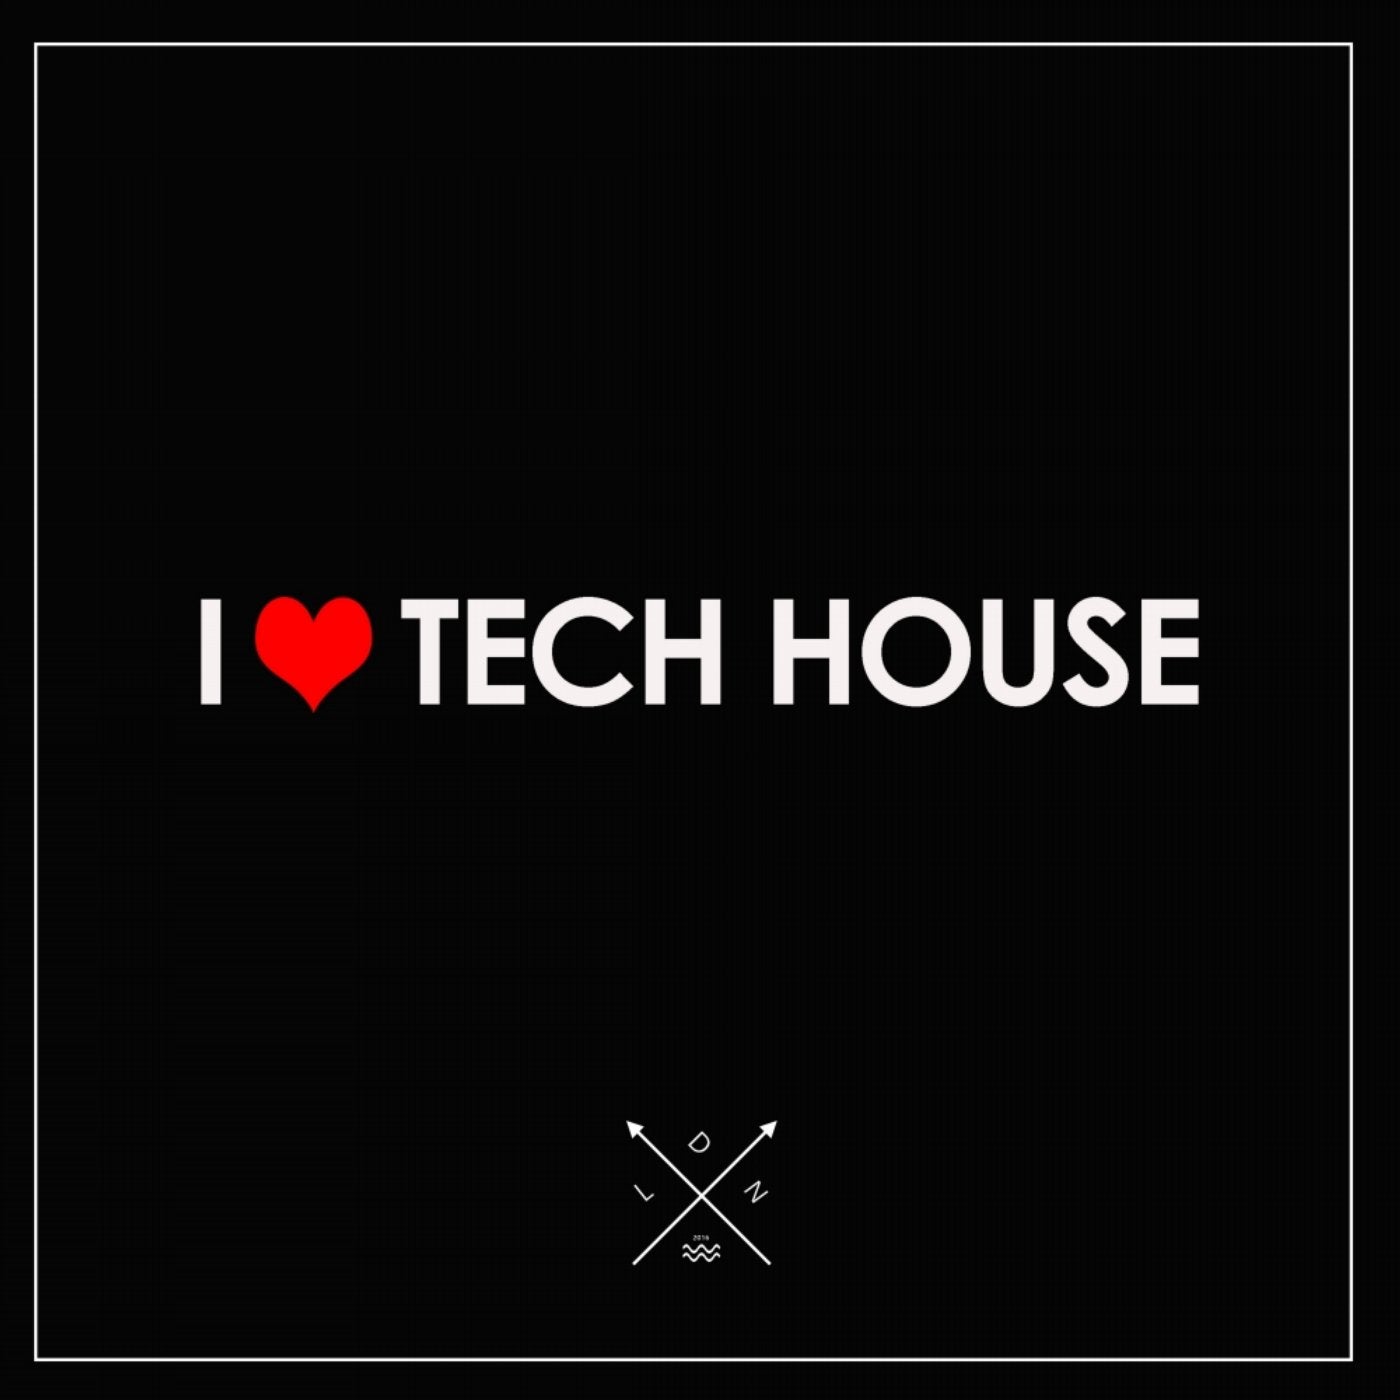 I Love Tech House 2016